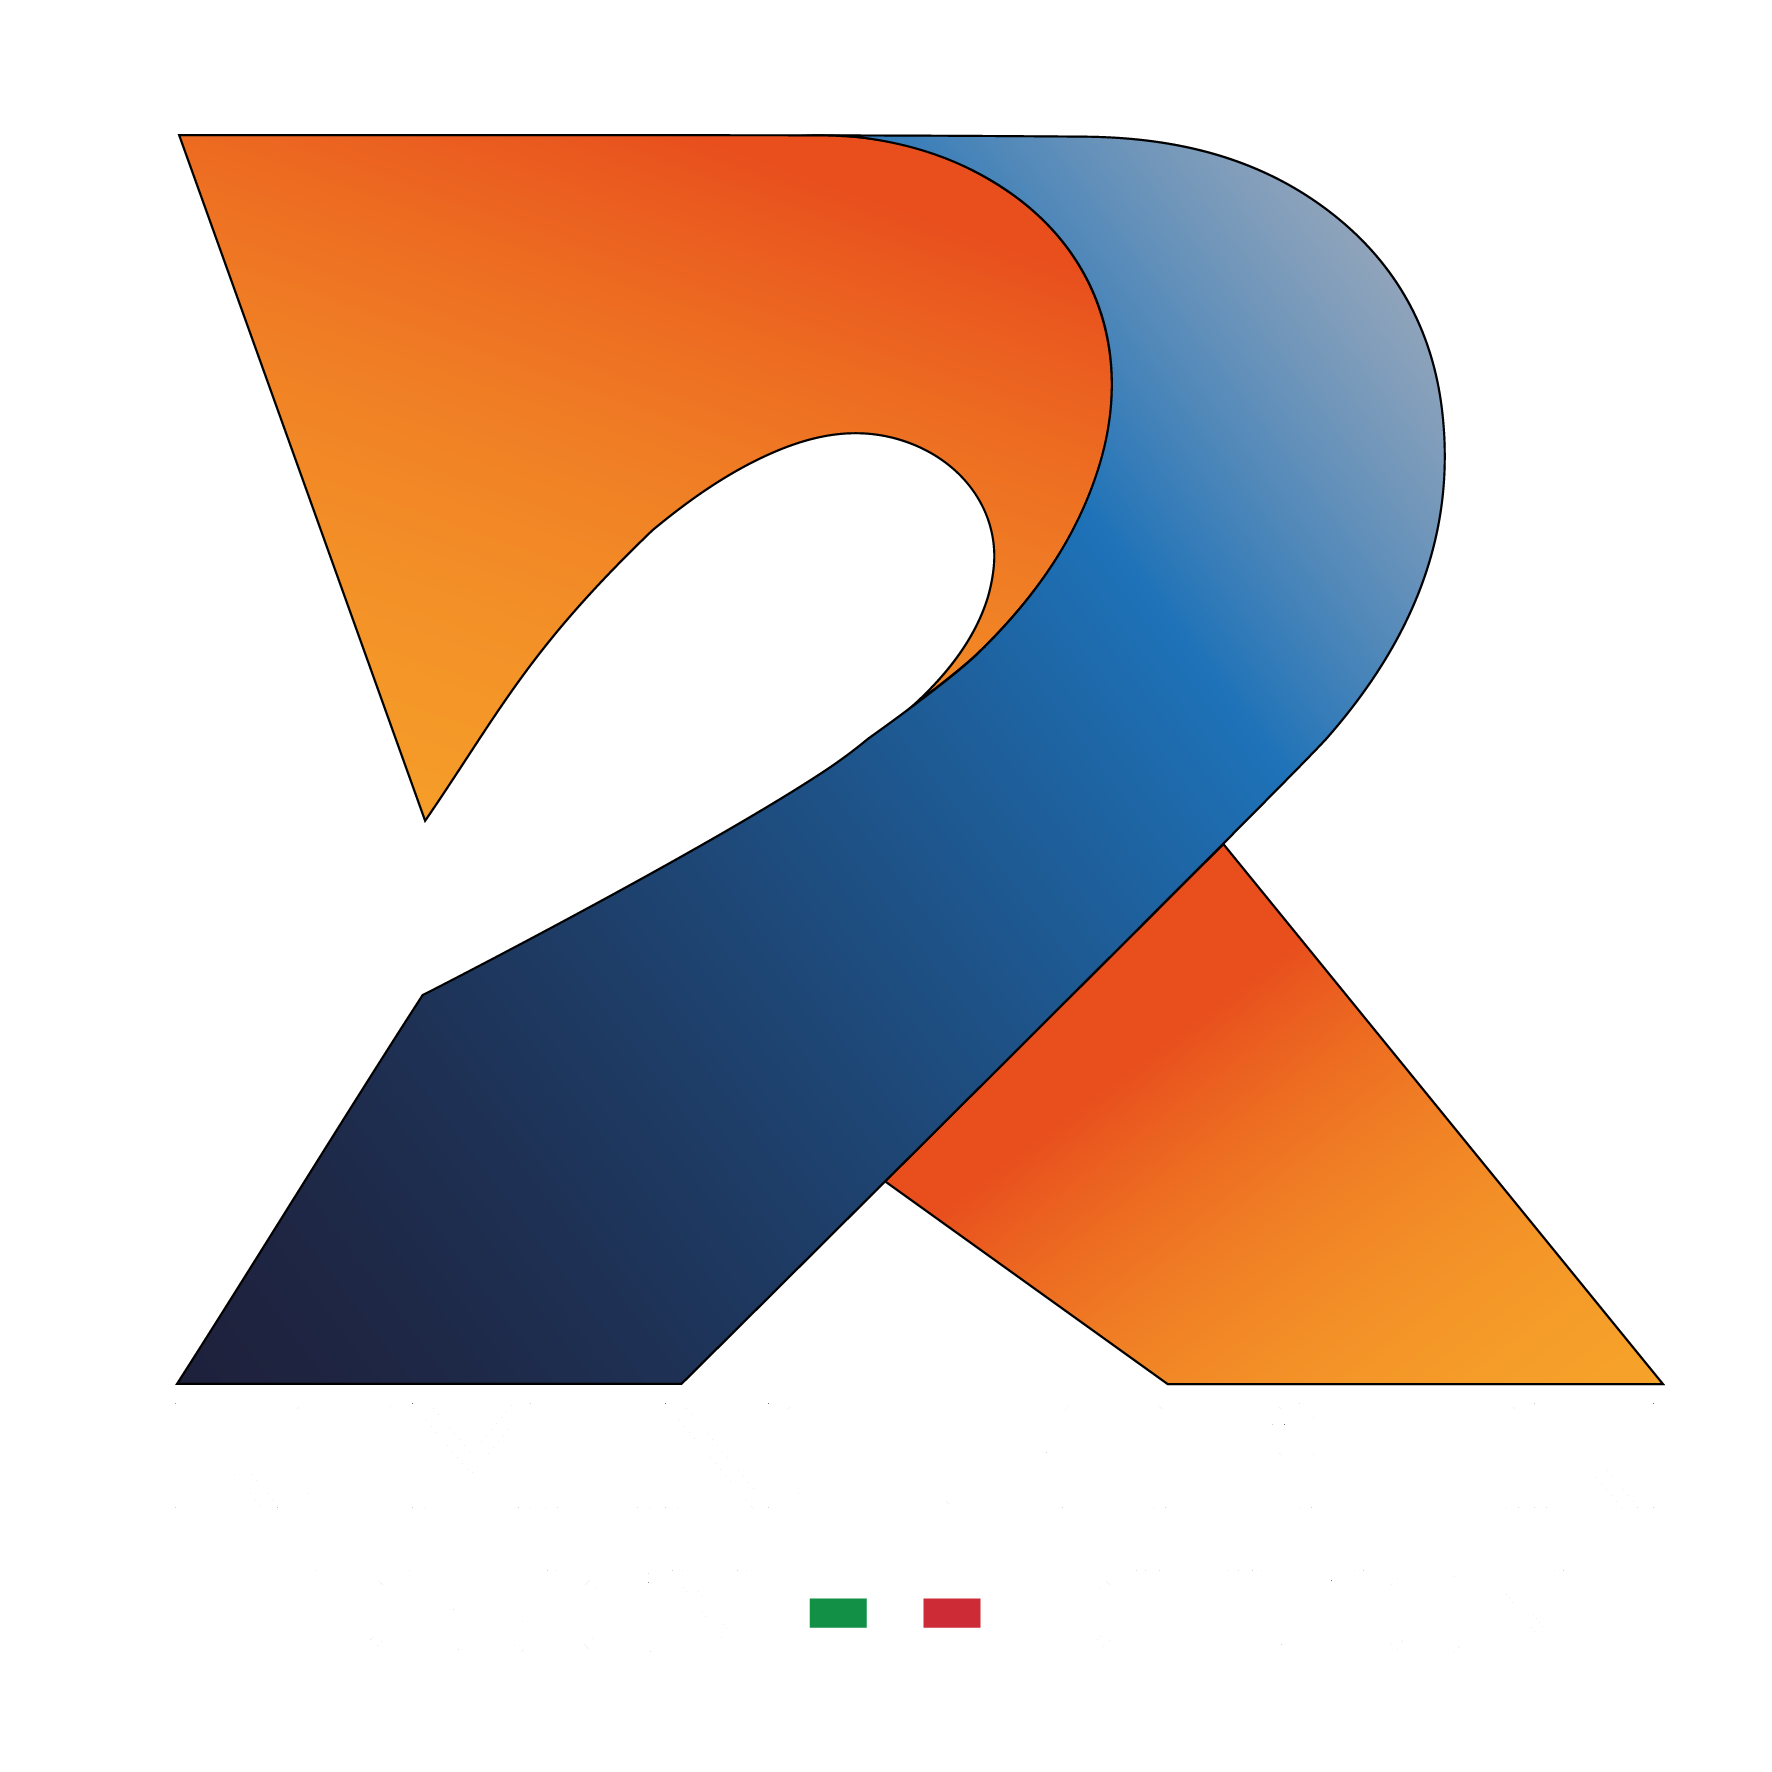 Romano Gaspari Design DIvision